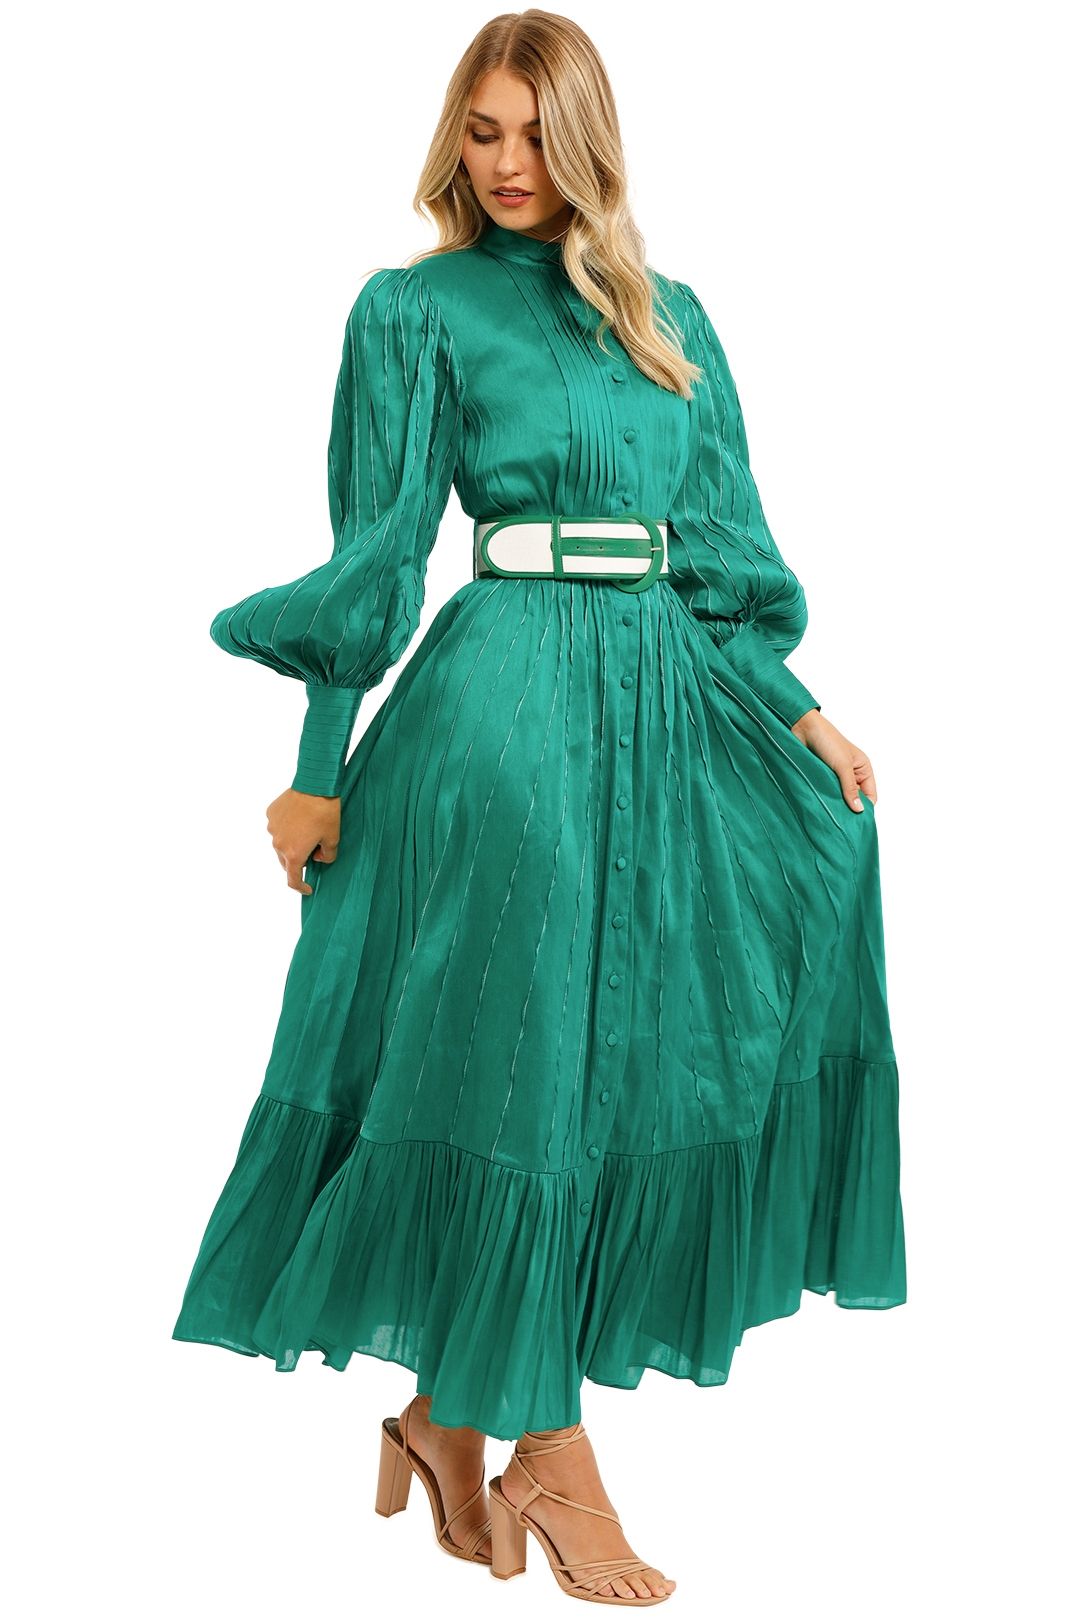 LEO LIN Viridian Silk Linen Dress Forest Green